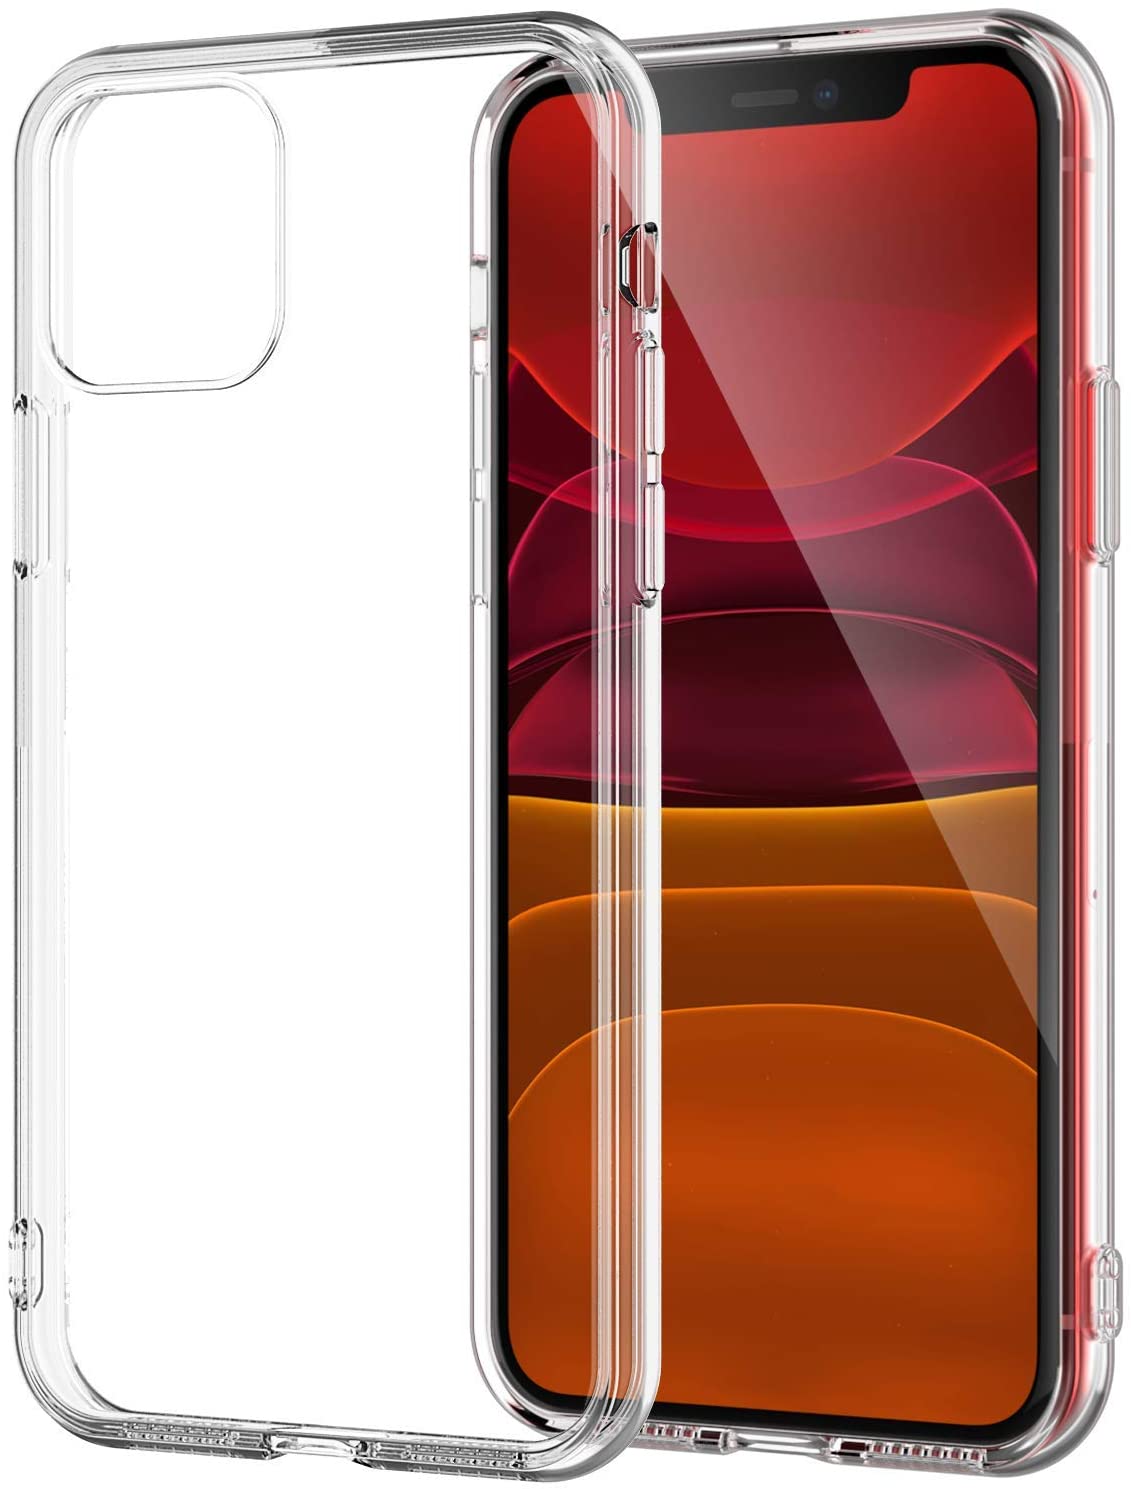 Funda de silicona para el iPhone 11 Pro Max - Granada - Apple (ES)